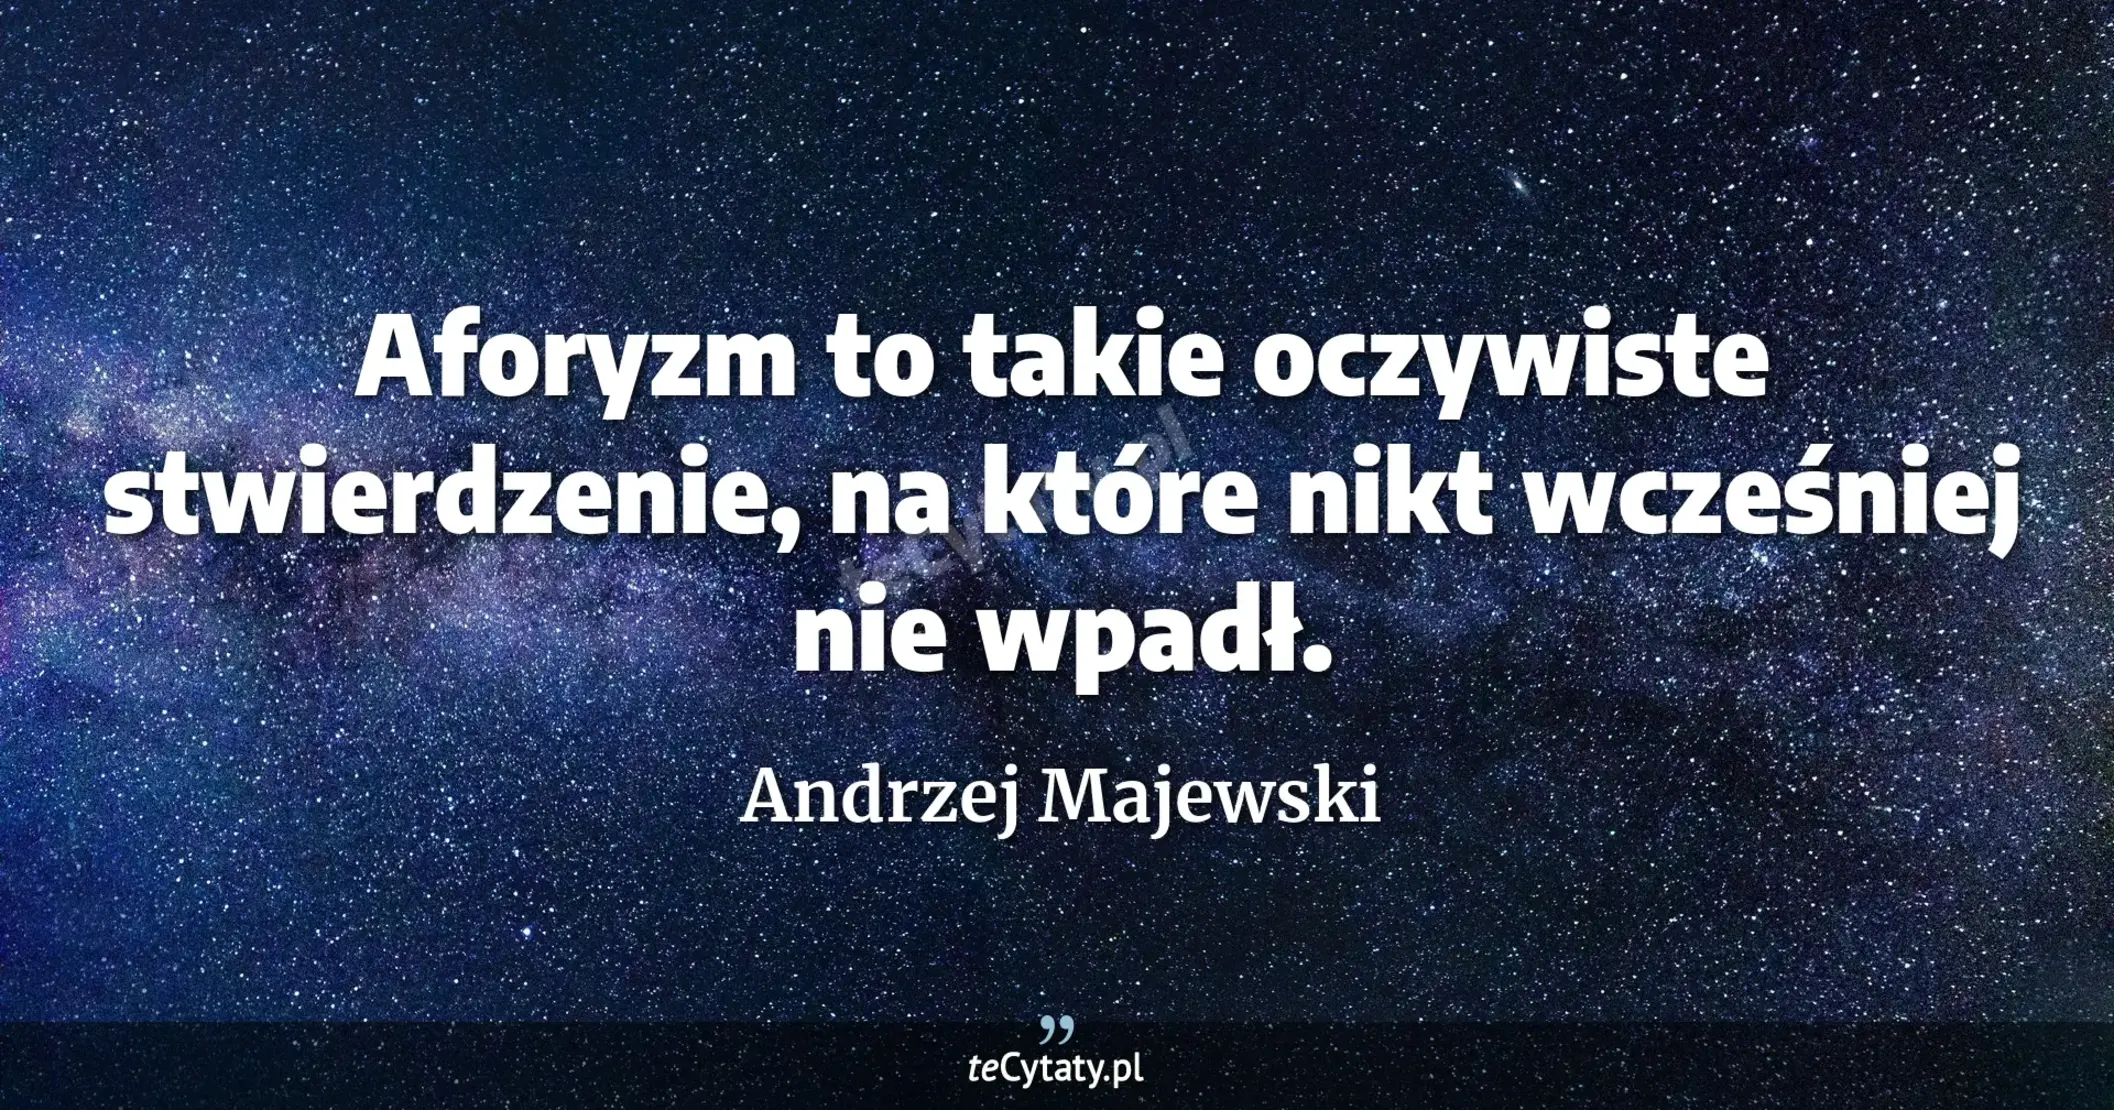 Aforyzm to takie oczywiste stwierdzenie, na które nikt wcześniej nie wpadł. - Andrzej Majewski